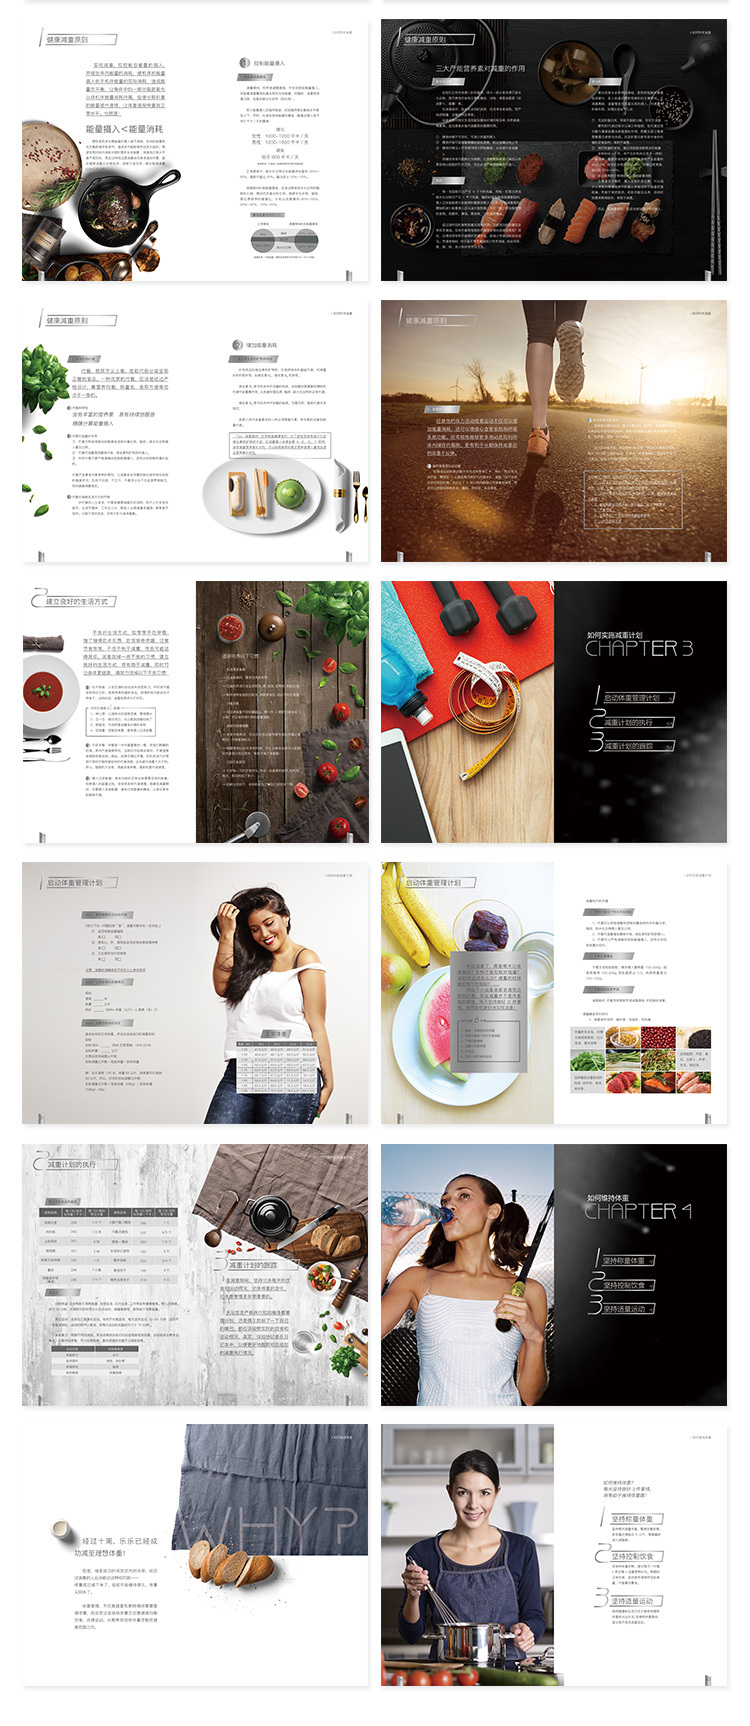 玩具食品农产品3c数码保健化妆品画册logo包装品牌定位策划设计图4